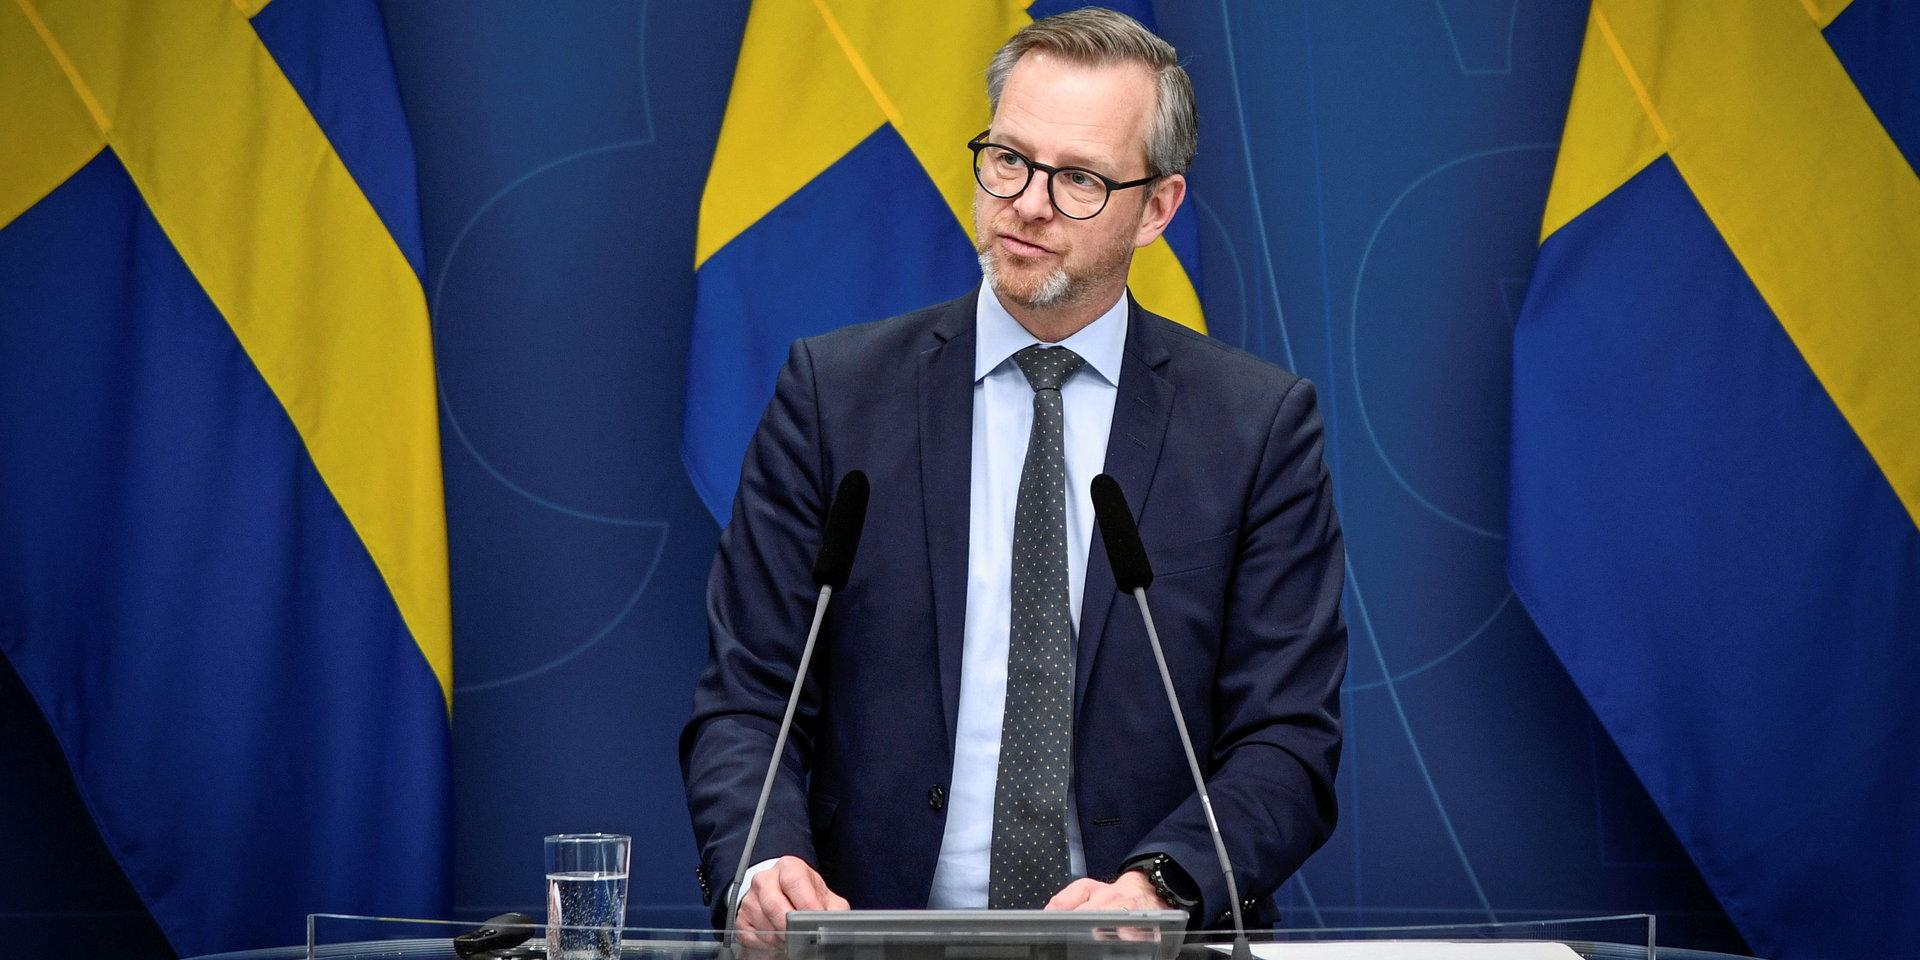 Finansminister Mikael Damberg under en pressträff om åtgärder för att motverka brister i folkbokföringen.